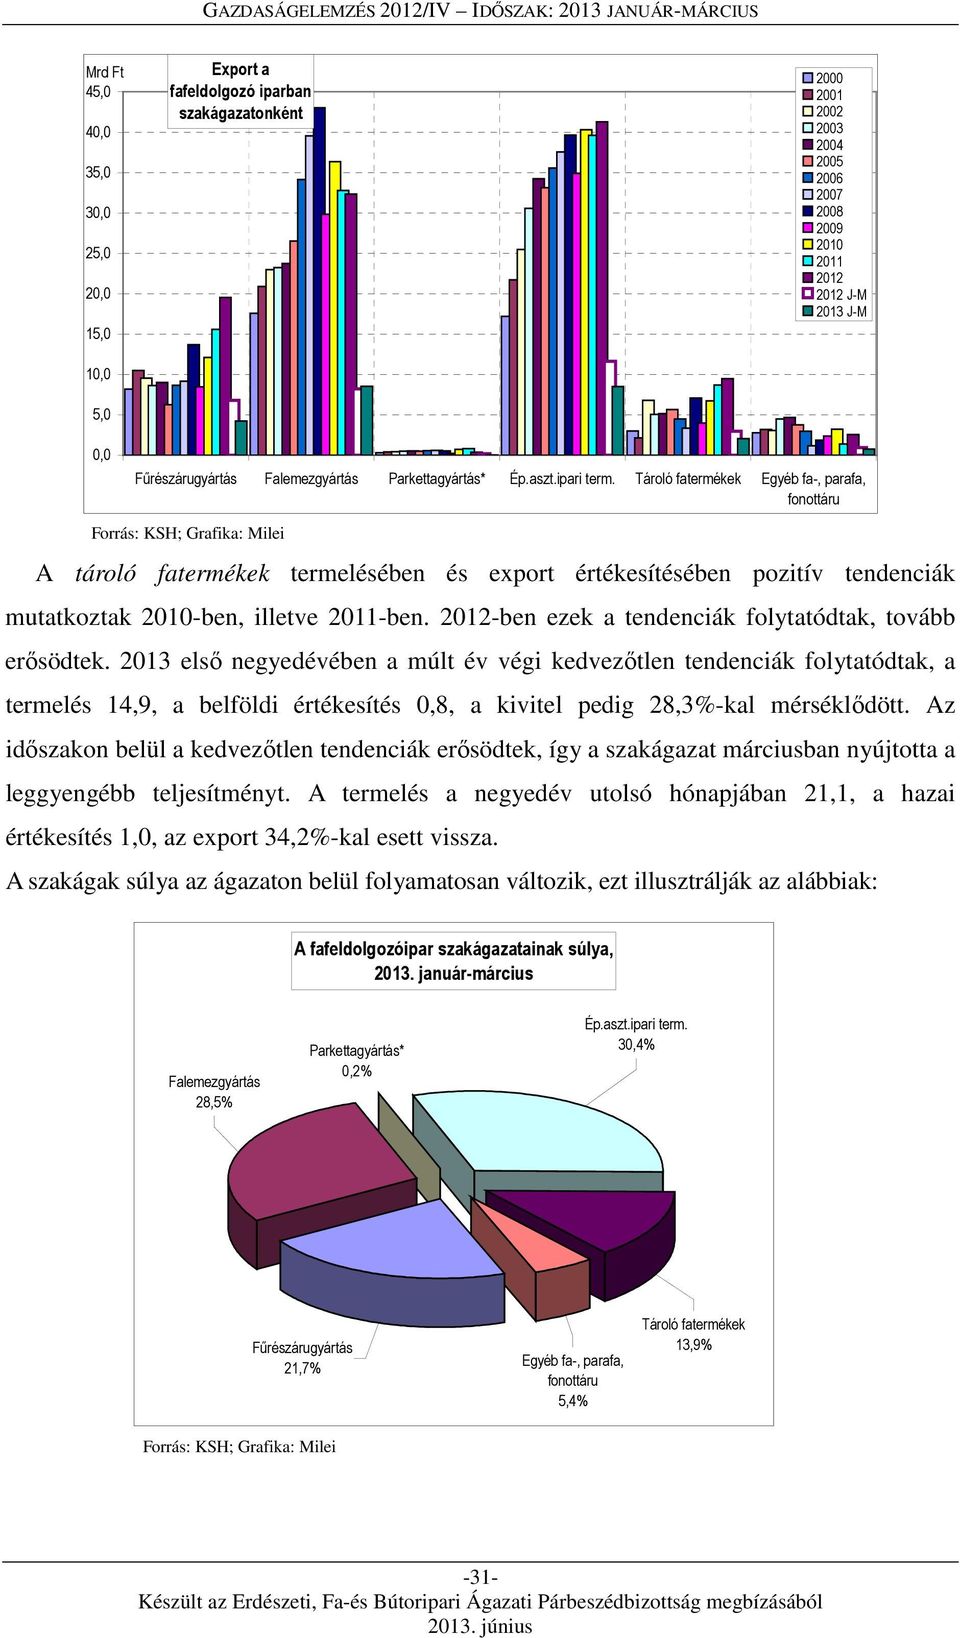 Tároló fatermékek Egyéb fa-, parafa, fonottáru Forrás: KSH; Grafika: Milei A tároló fatermékek termelésében és export értékesítésében pozitív tendenciák mutatkoztak 2010-ben, illetve 2011-ben.